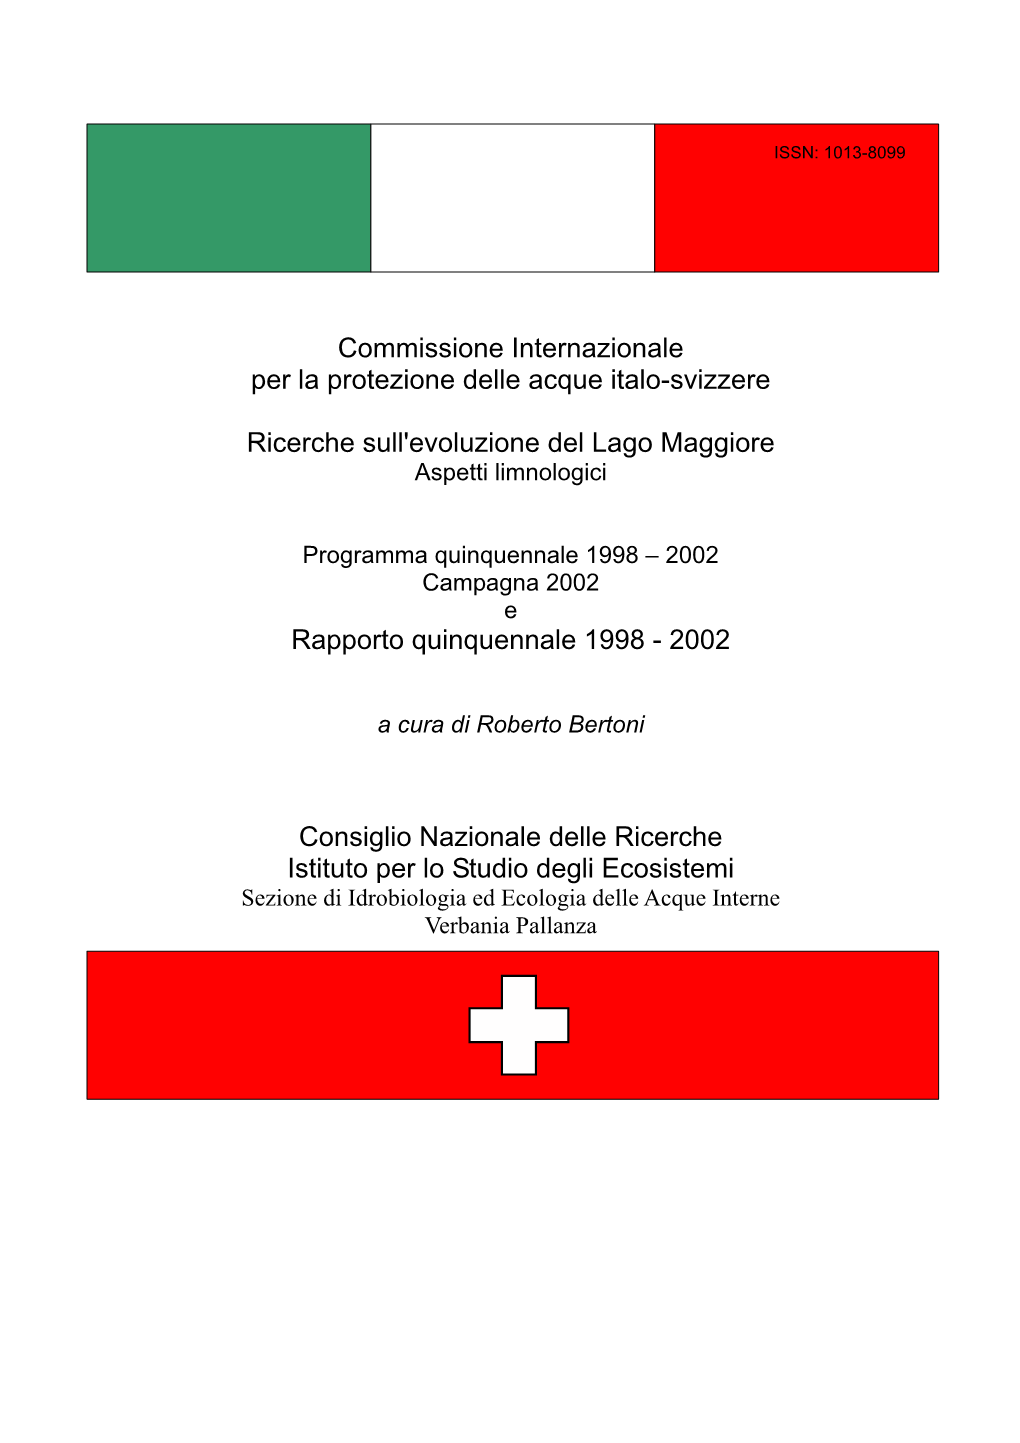 Commissione Internazionale Per La Protezione Delle Acque Italo-Svizzere